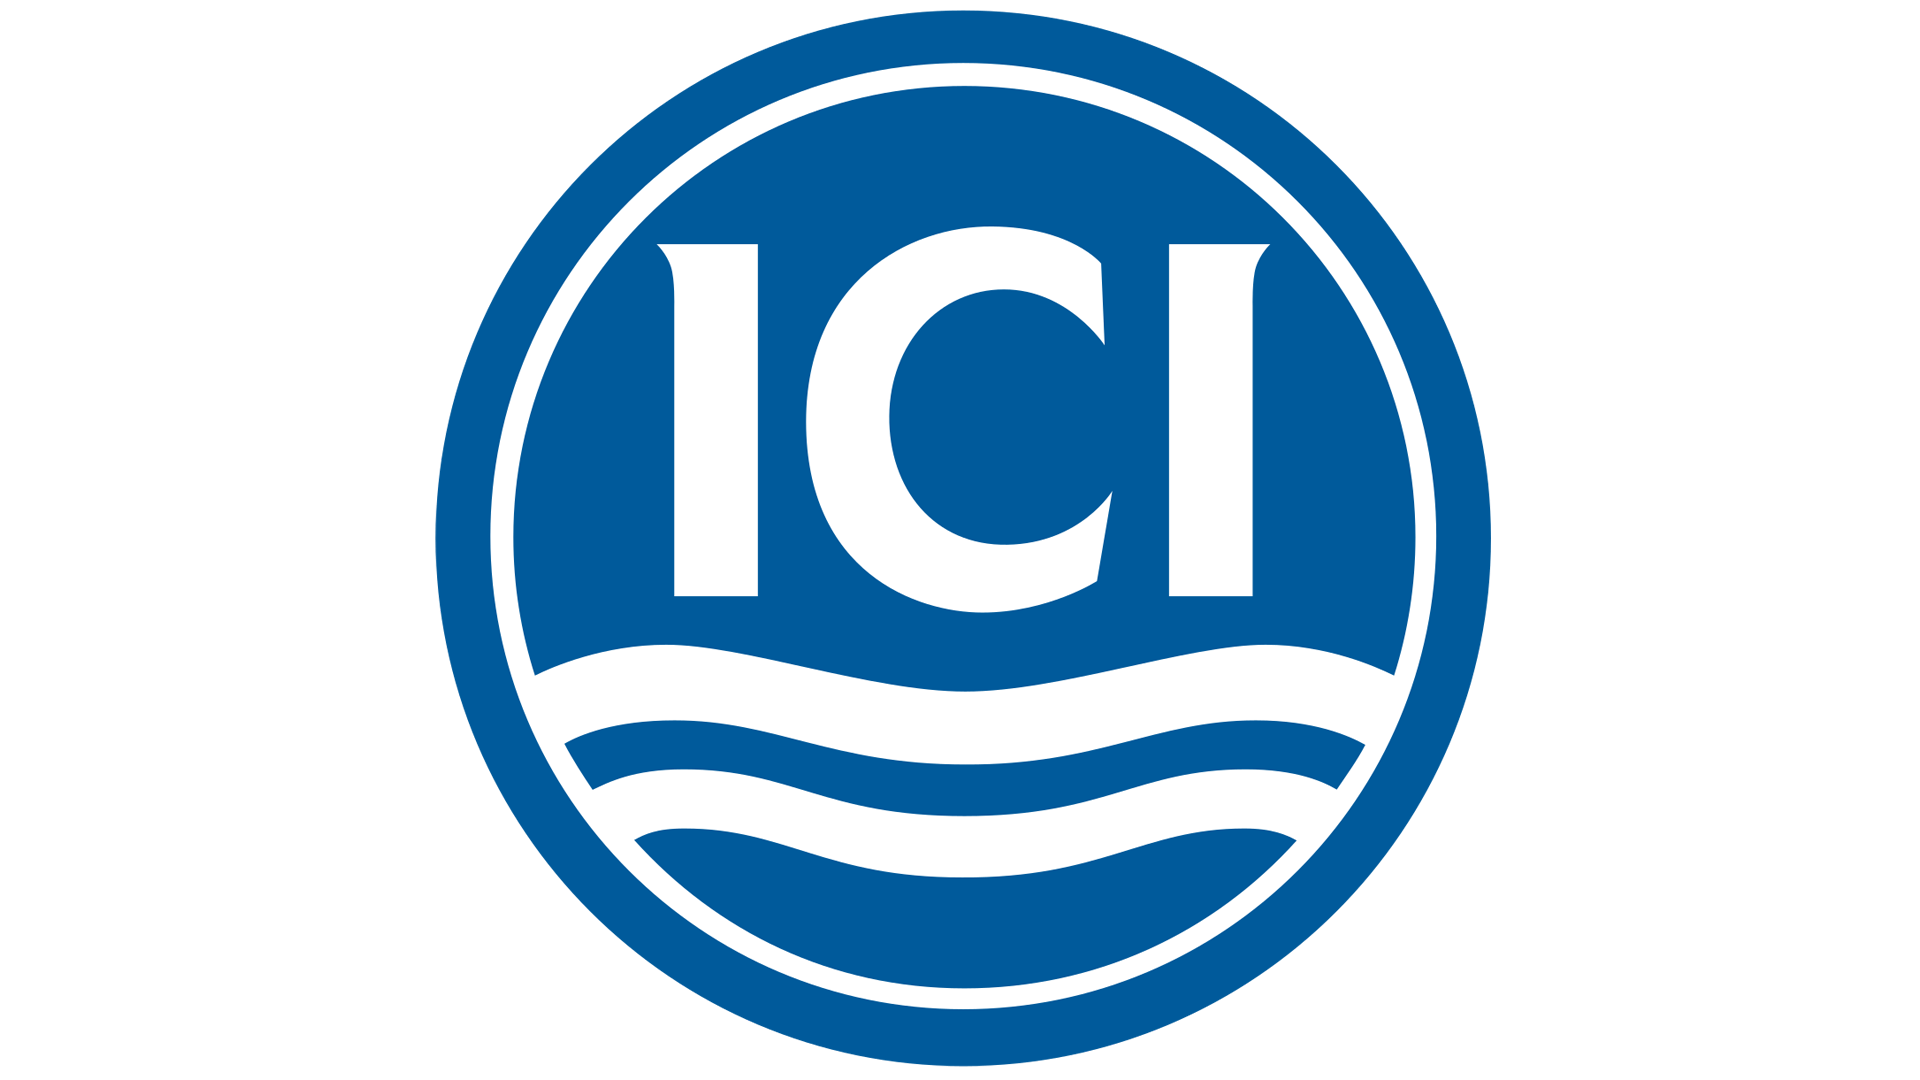 ICI Video - YouTube